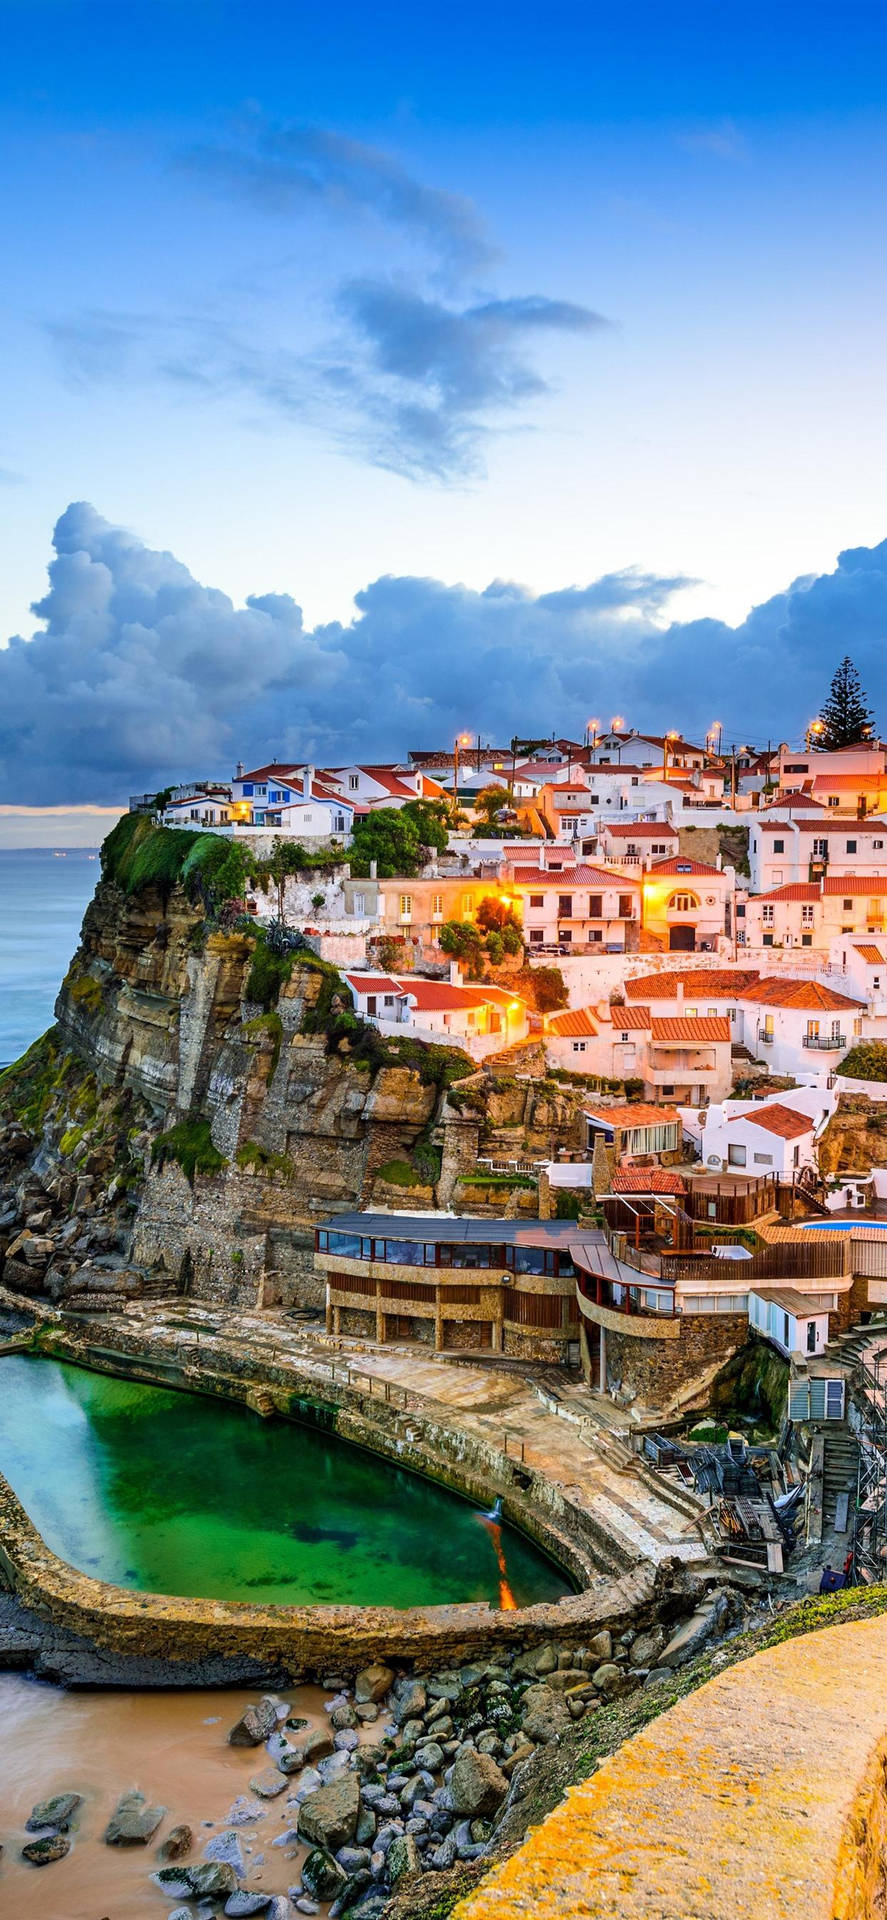 Bellissimopaesaggio Della Spiaggia Di Azenha Do Mar A Sintra, In Portogallo. Sfondo